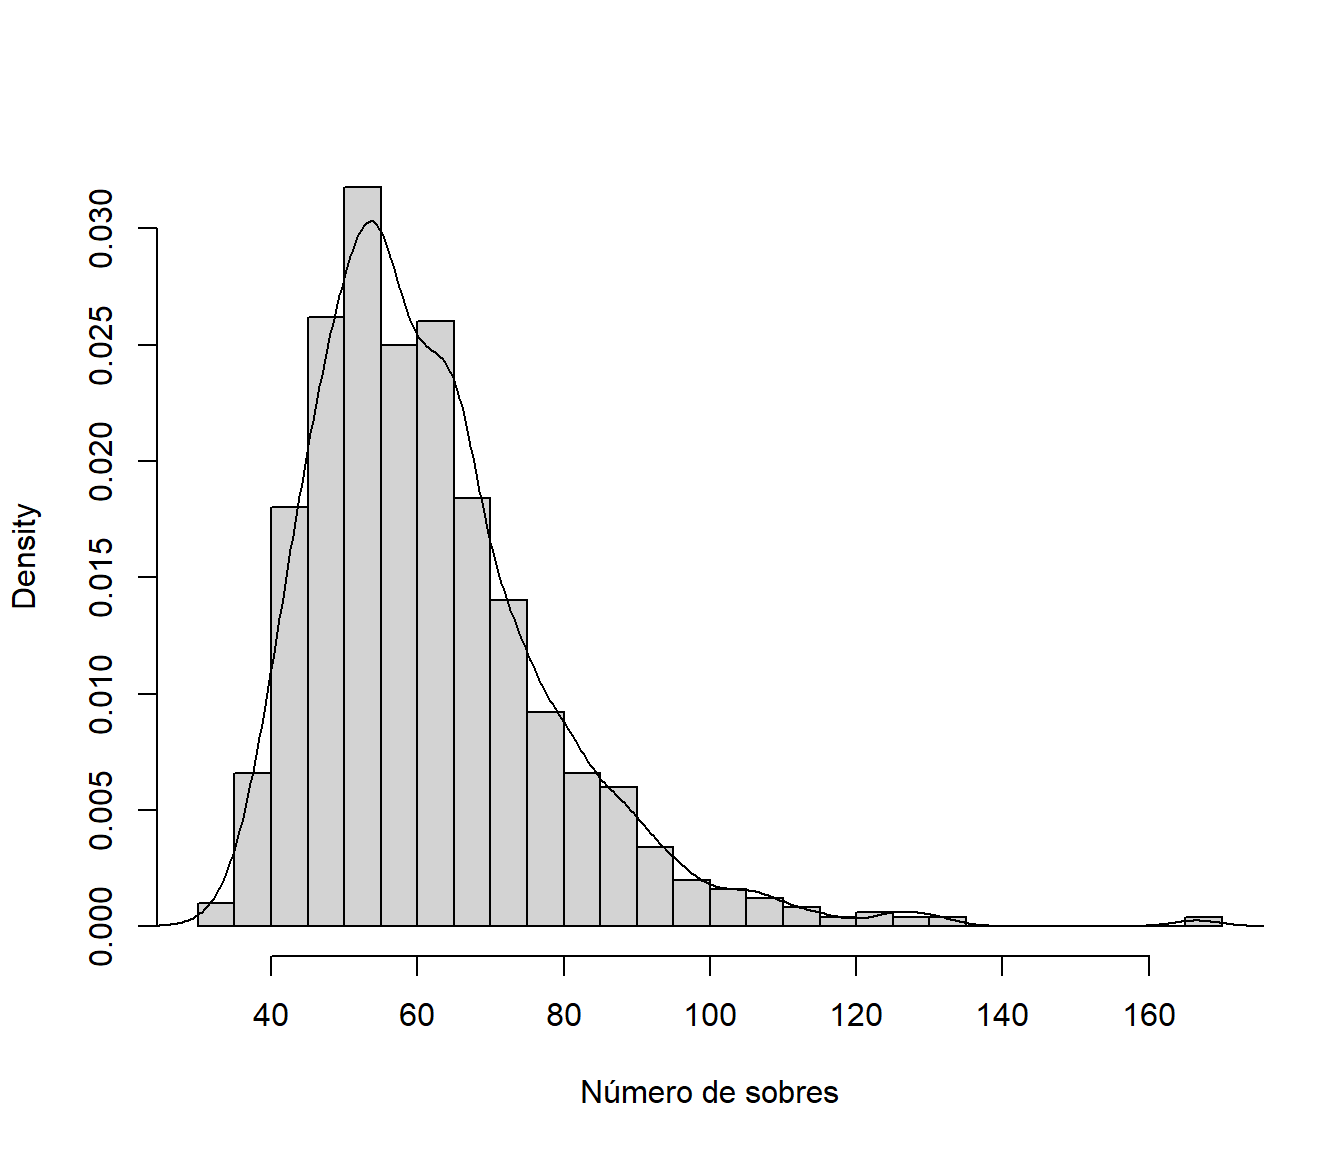 Aproximación por simulación de la distribución del número de sobres para completar la colección.